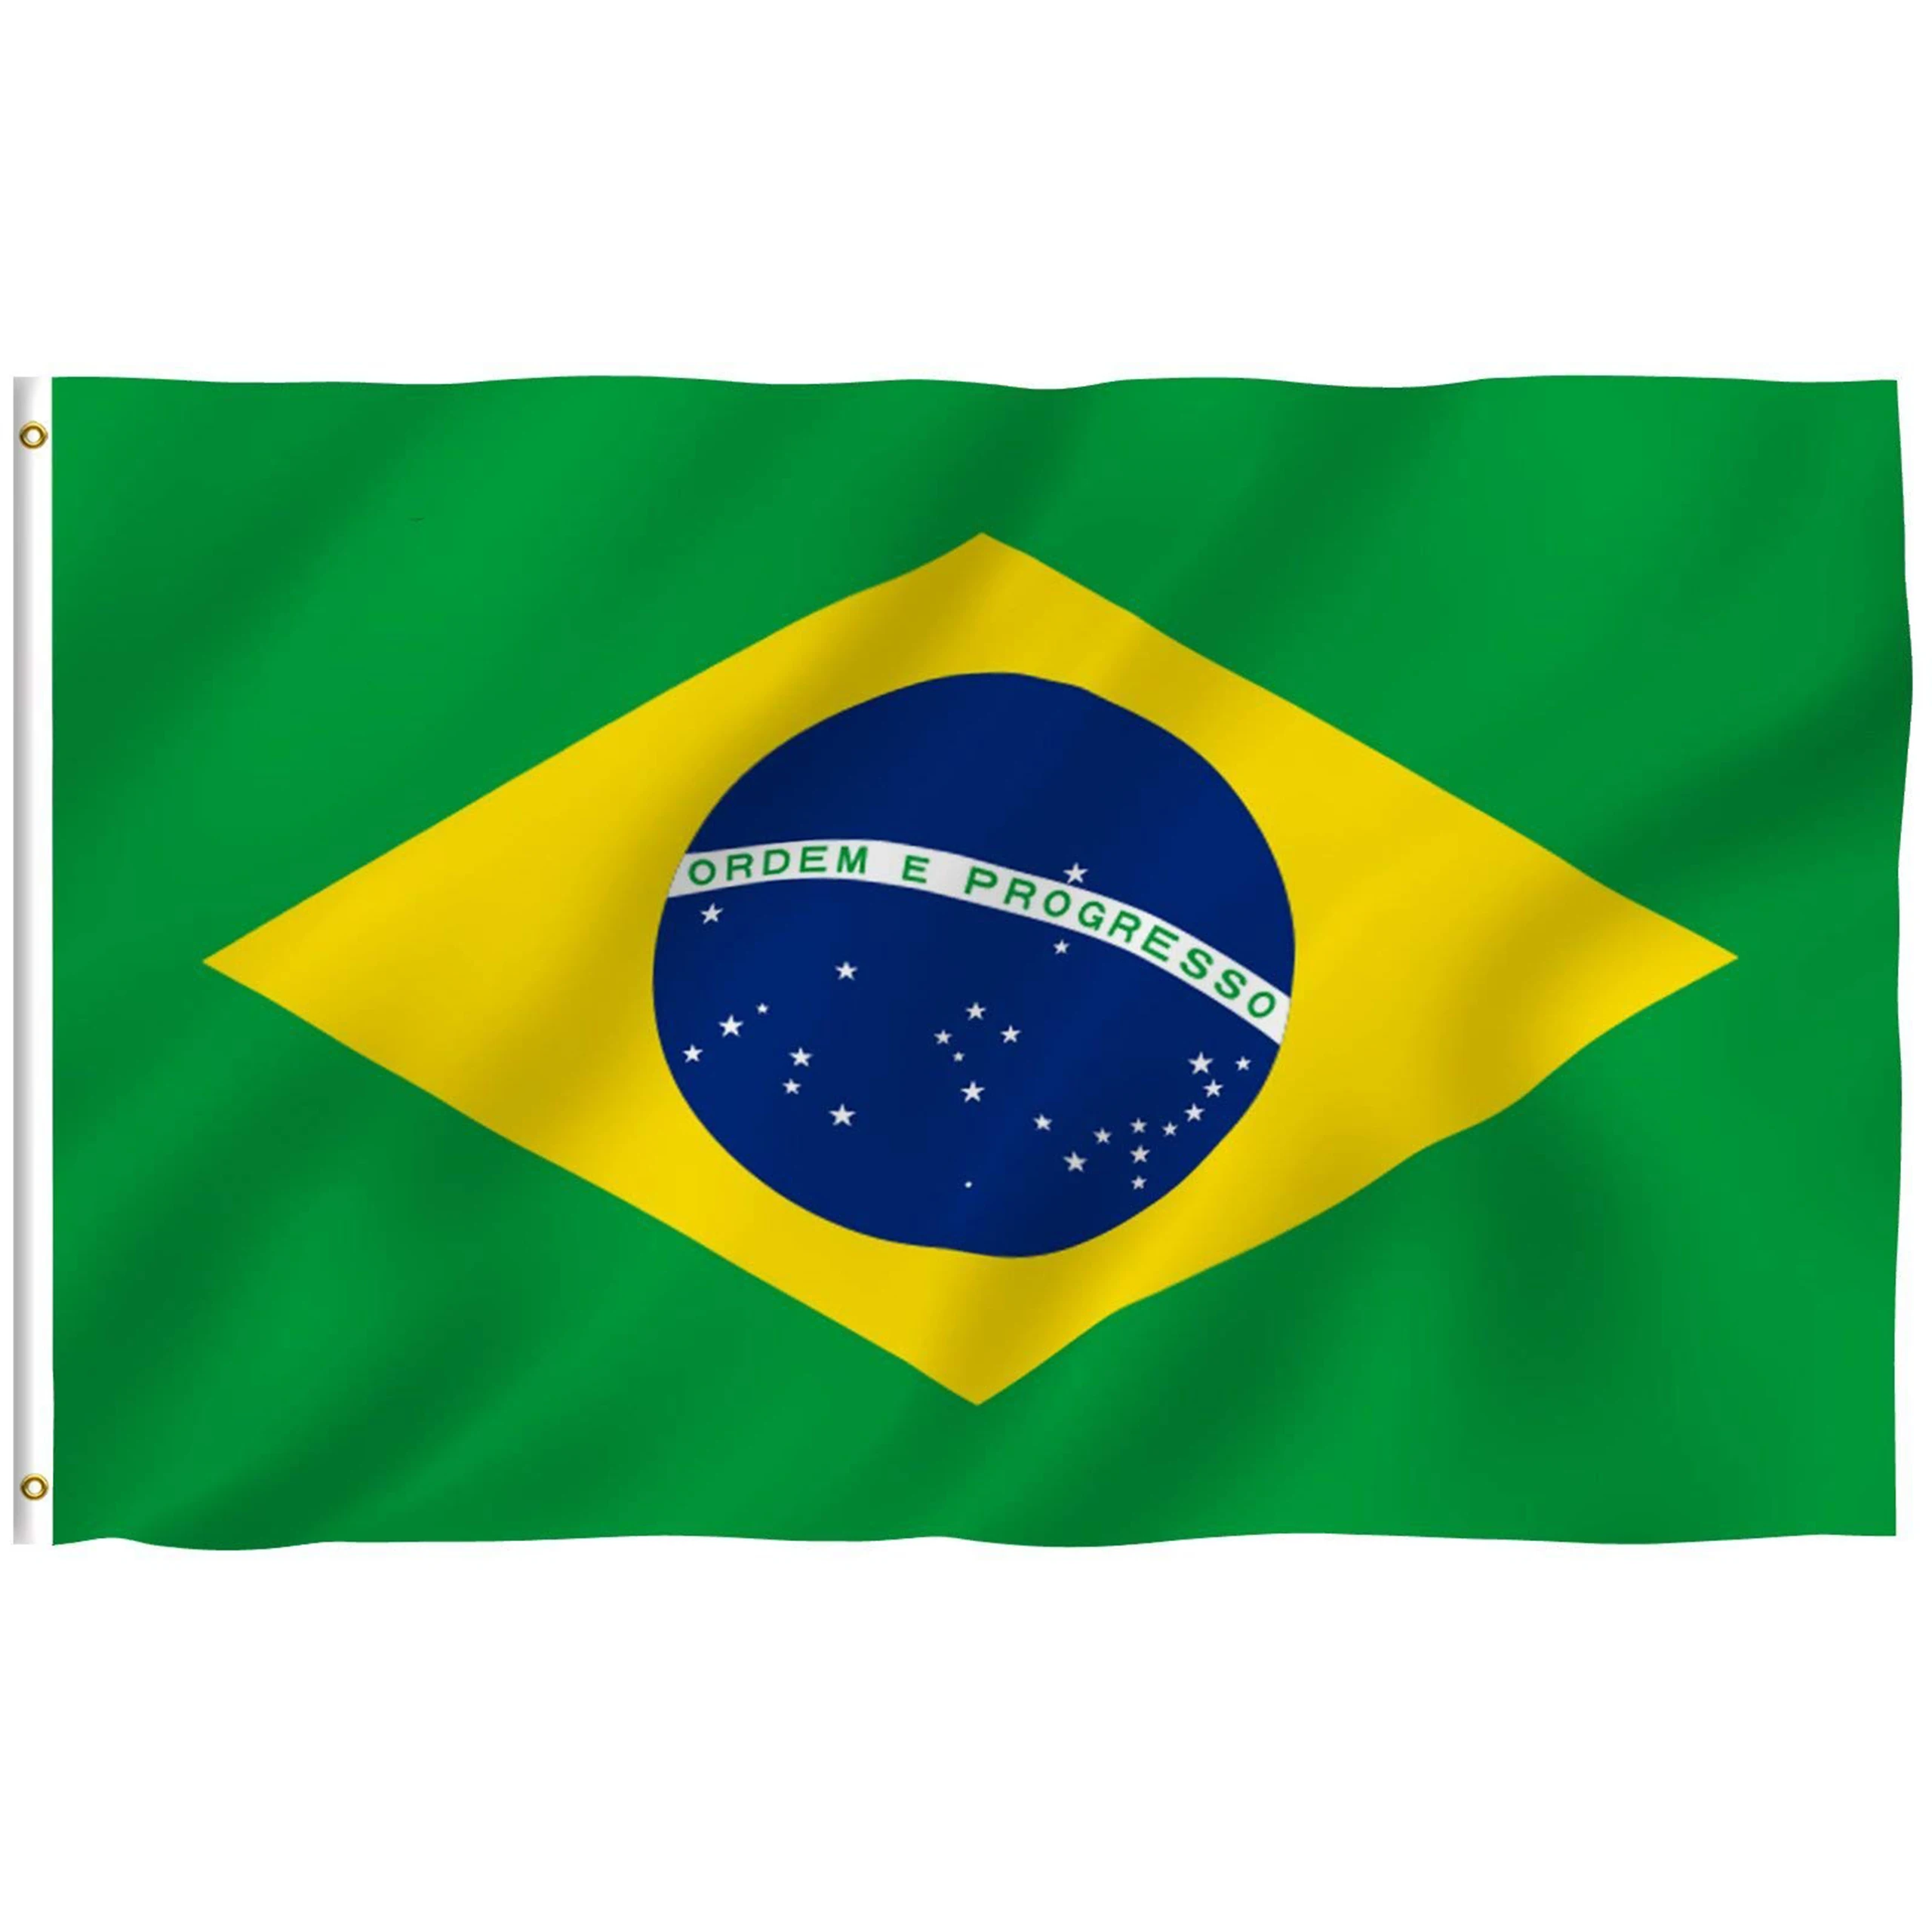 Cờ quốc gia Brazil luôn là biểu tượng của lòng yêu nước và tinh thần độc lập tự do. Đến năm 2024, cờ quốc gia Brazil đã trở nên đặc biệt hơn bao giờ hết với thiết kế mới, khẳng định sự tự hào của đất nước và văn hóa Brazil. Hình ảnh của cờ quốc gia Brazil với những màu sắc tươi sáng và ý nghĩa sâu sắc sẽ khiến cho người xem không khỏi cảm phục và cảm thông với dân tộc Brazil.